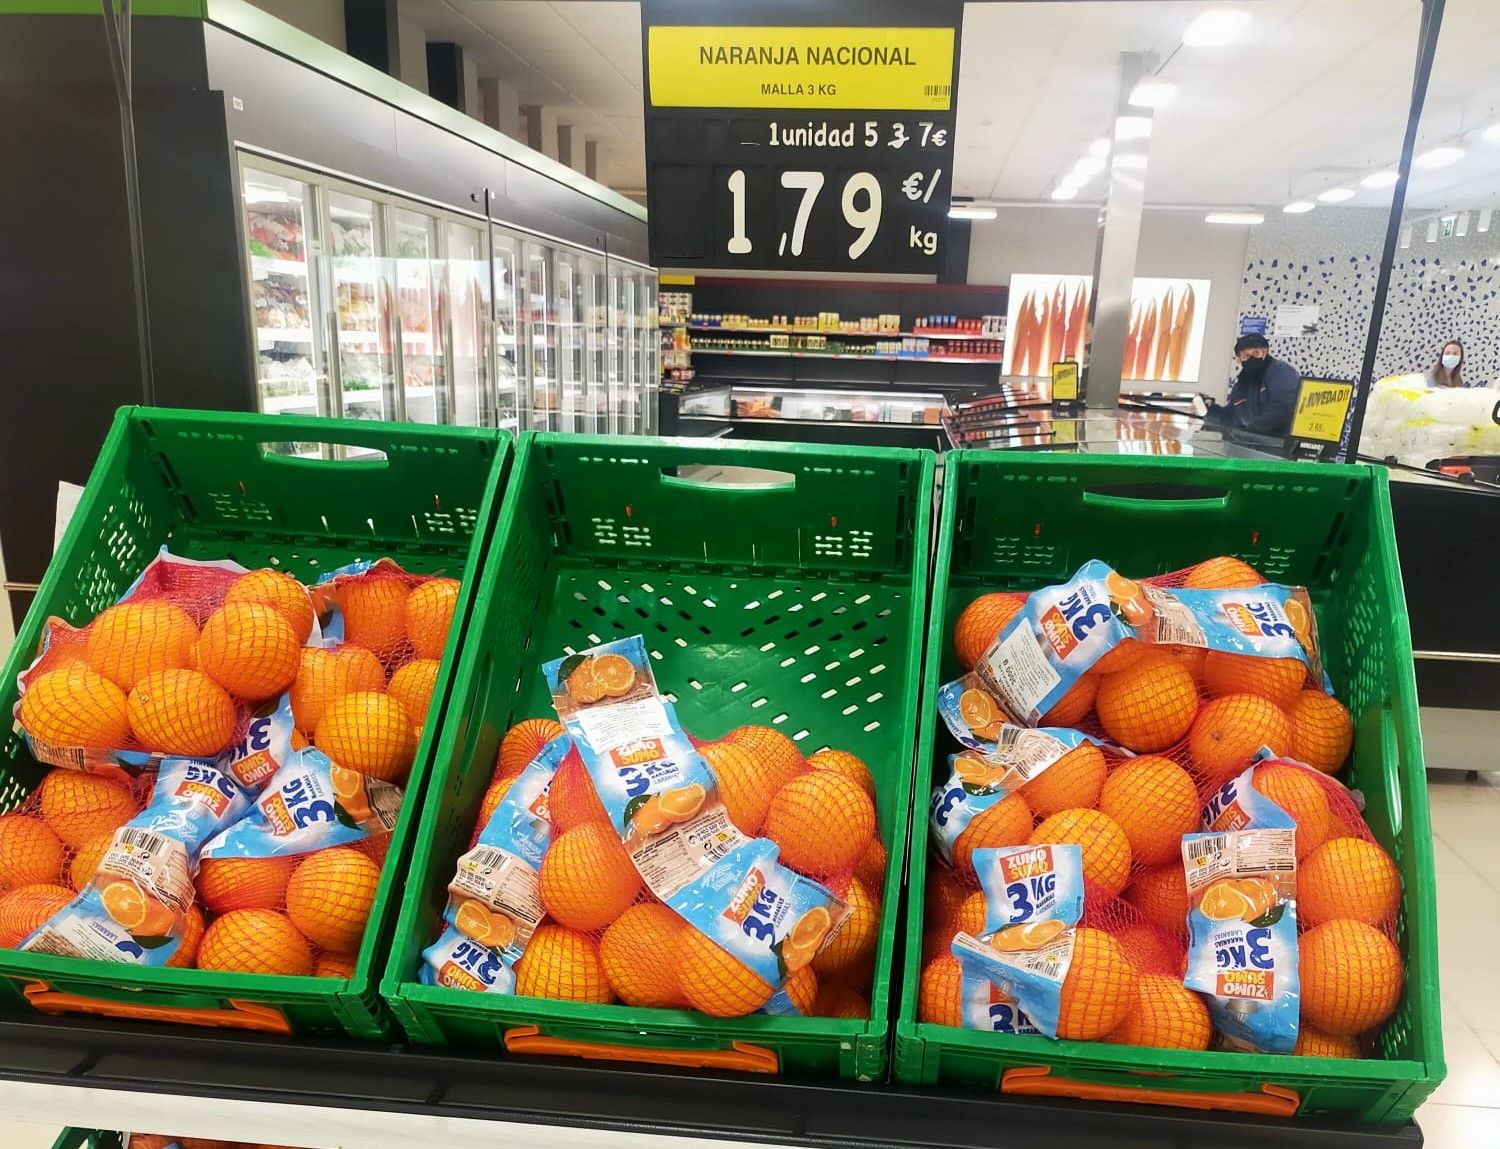 Naranjas sudafricanas comercializadas como nacionales en un supermercado de Valencia esta semana